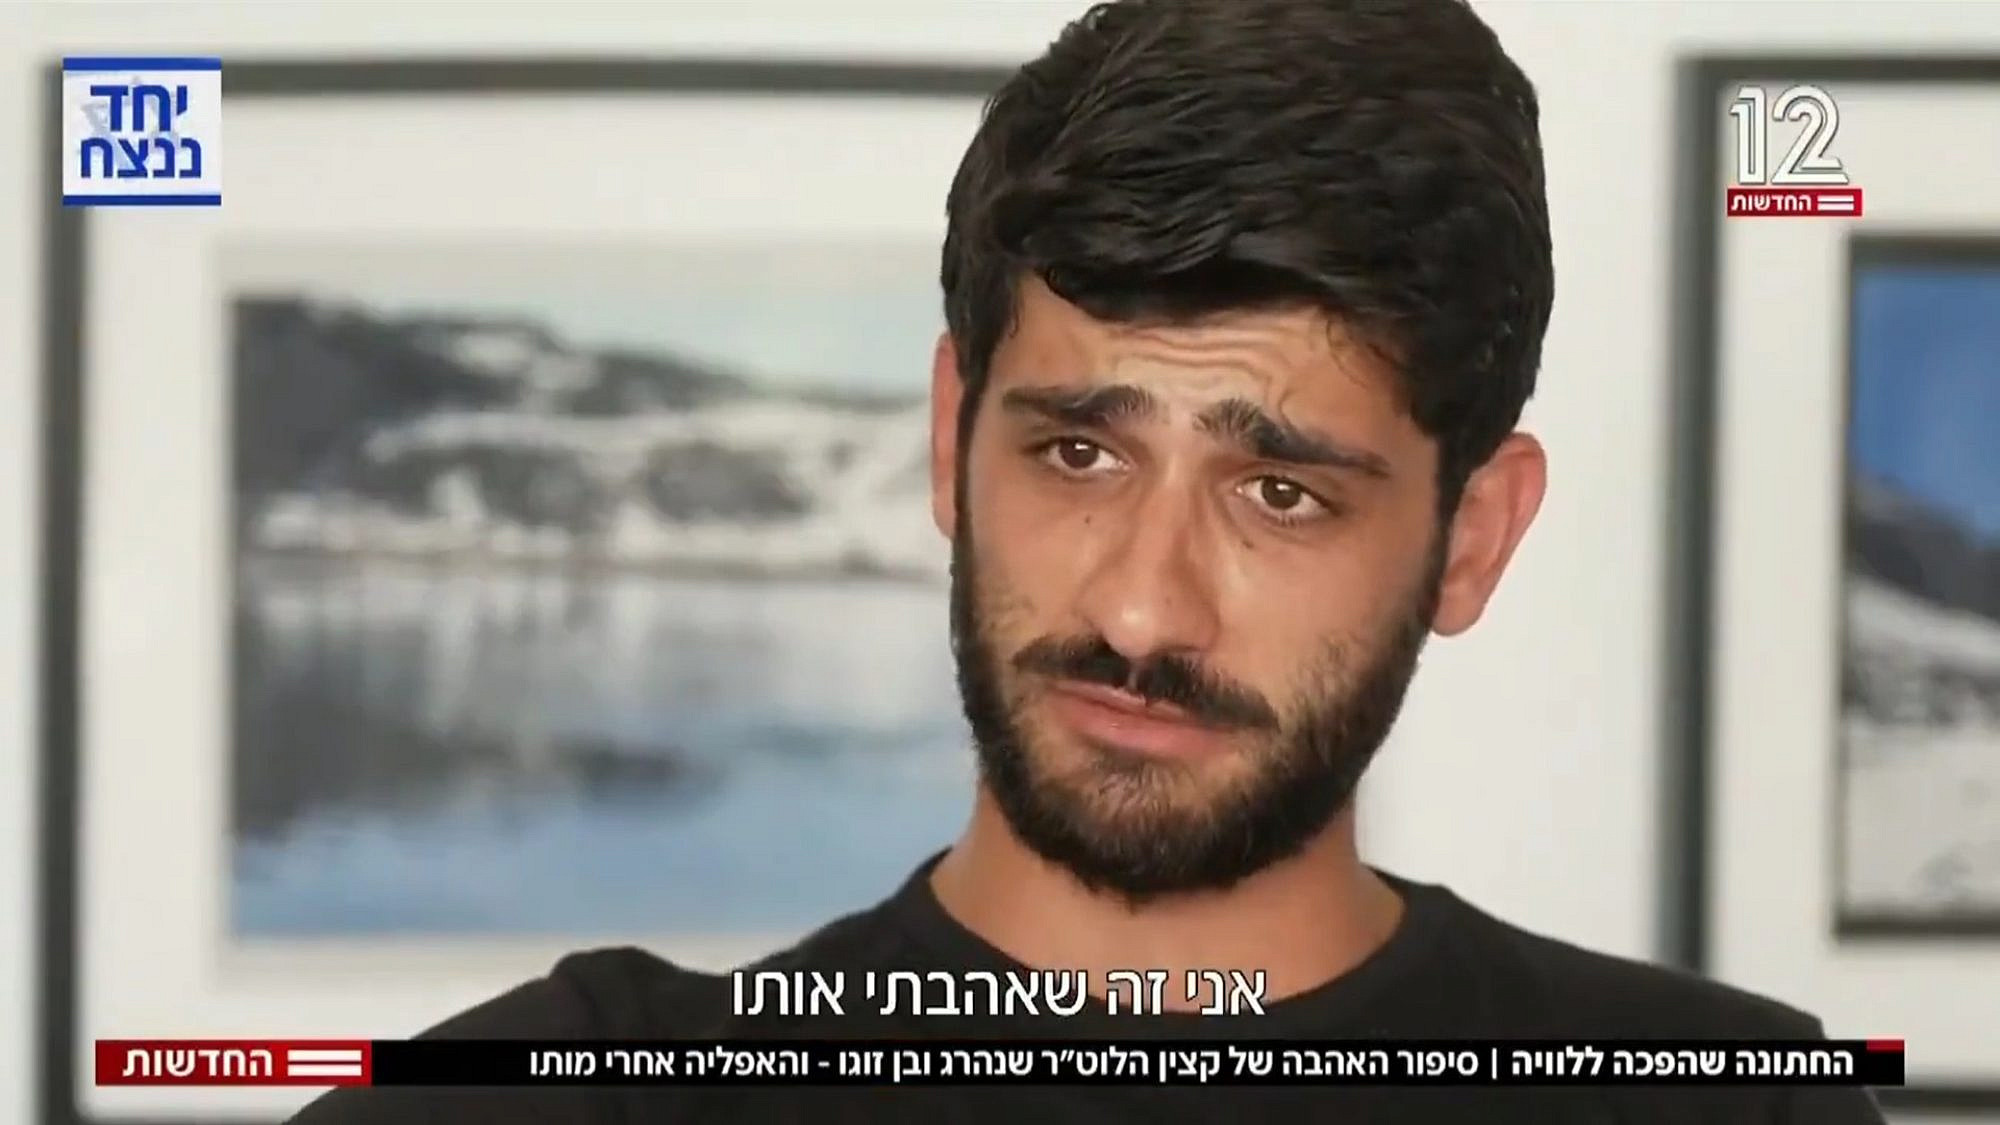 עומר אוחנה, בן זוגו של סרן שגיא גולן ז"ל, מול מצלמות חדשות 12. צילום מסך, קשת 12